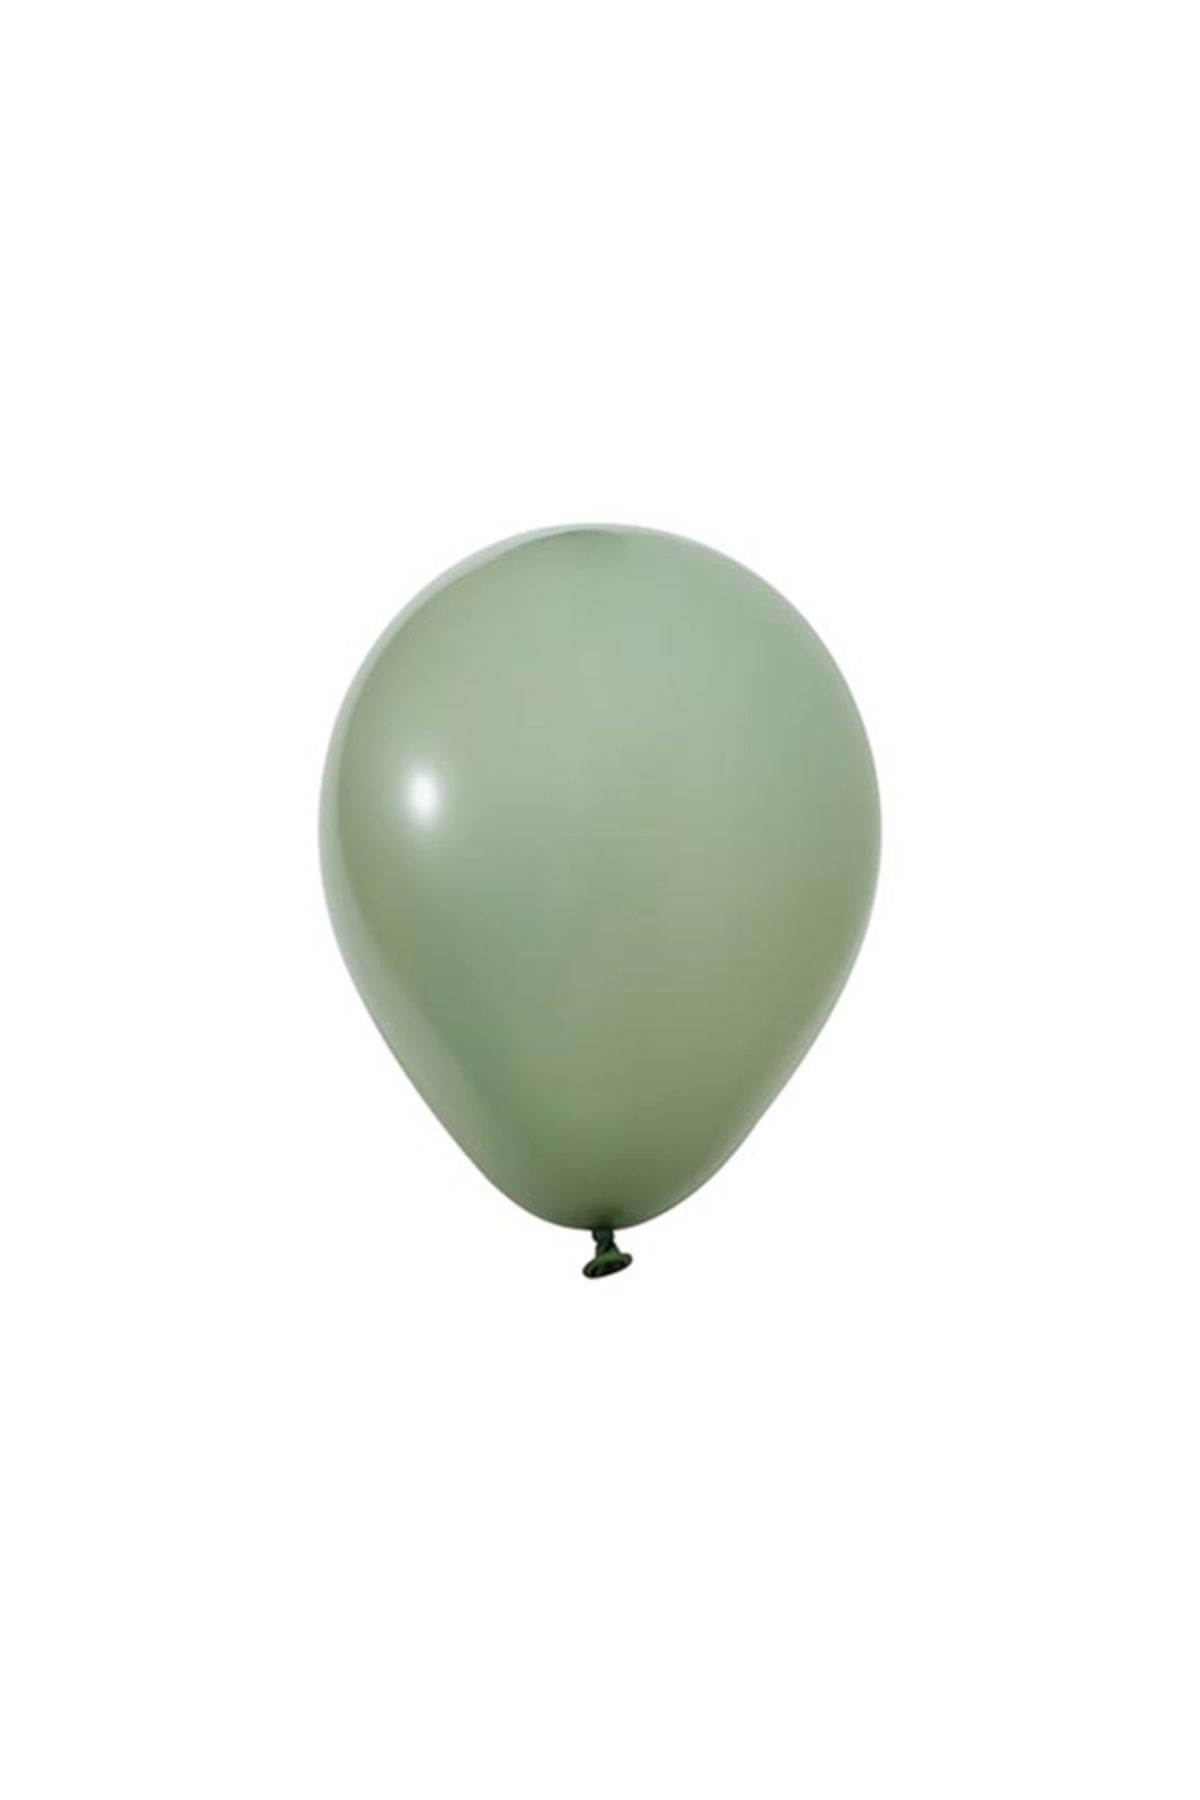 BALON HOME 12" Pastel Balon Seçenekleri (10Adet), Çeşitli Renk Seçenekleri İle..